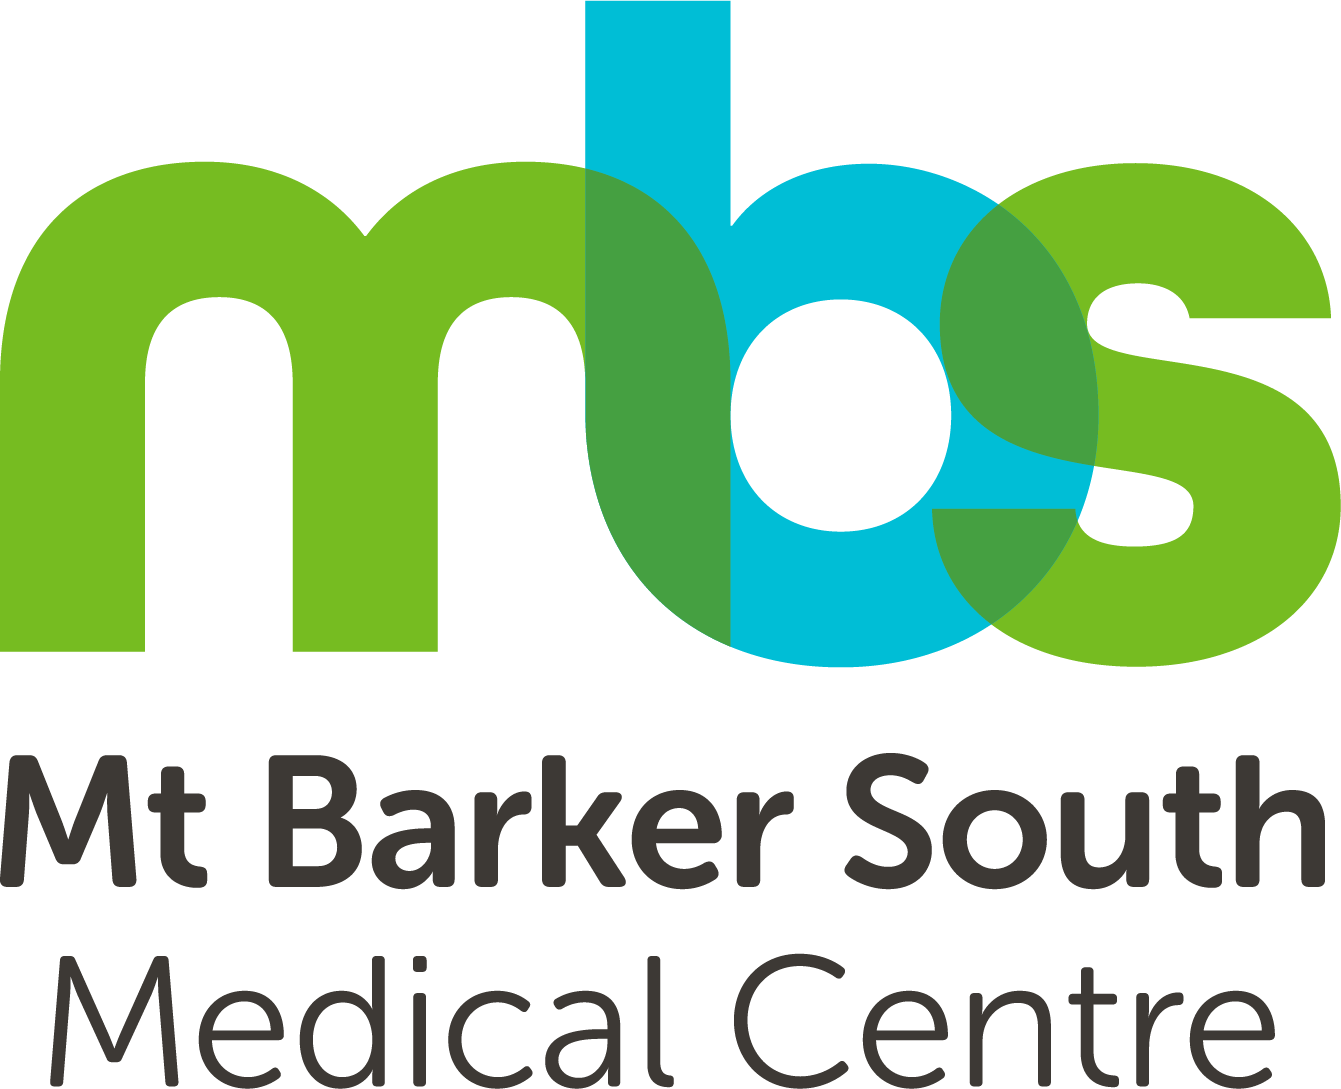 Mt Barker South Medical Centre